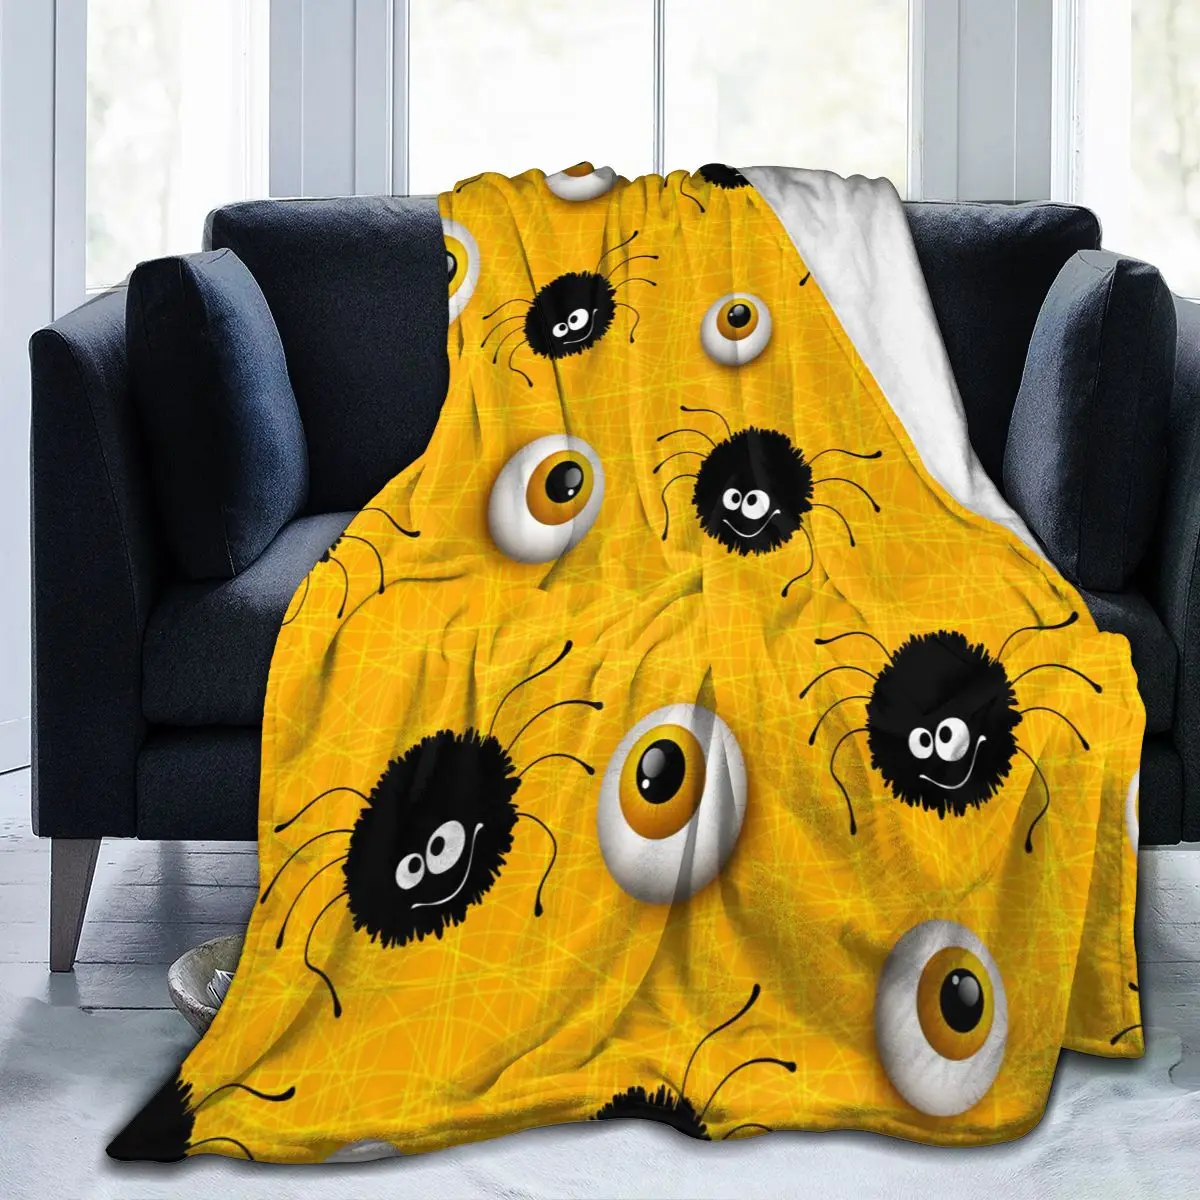 

Фланелевое Одеяло с глазами на Хэллоуин, ультра-мягкое Флисовое одеяло из микрофлиса, одеяло для халата, дивана, кровати, путешествий, дома, ...